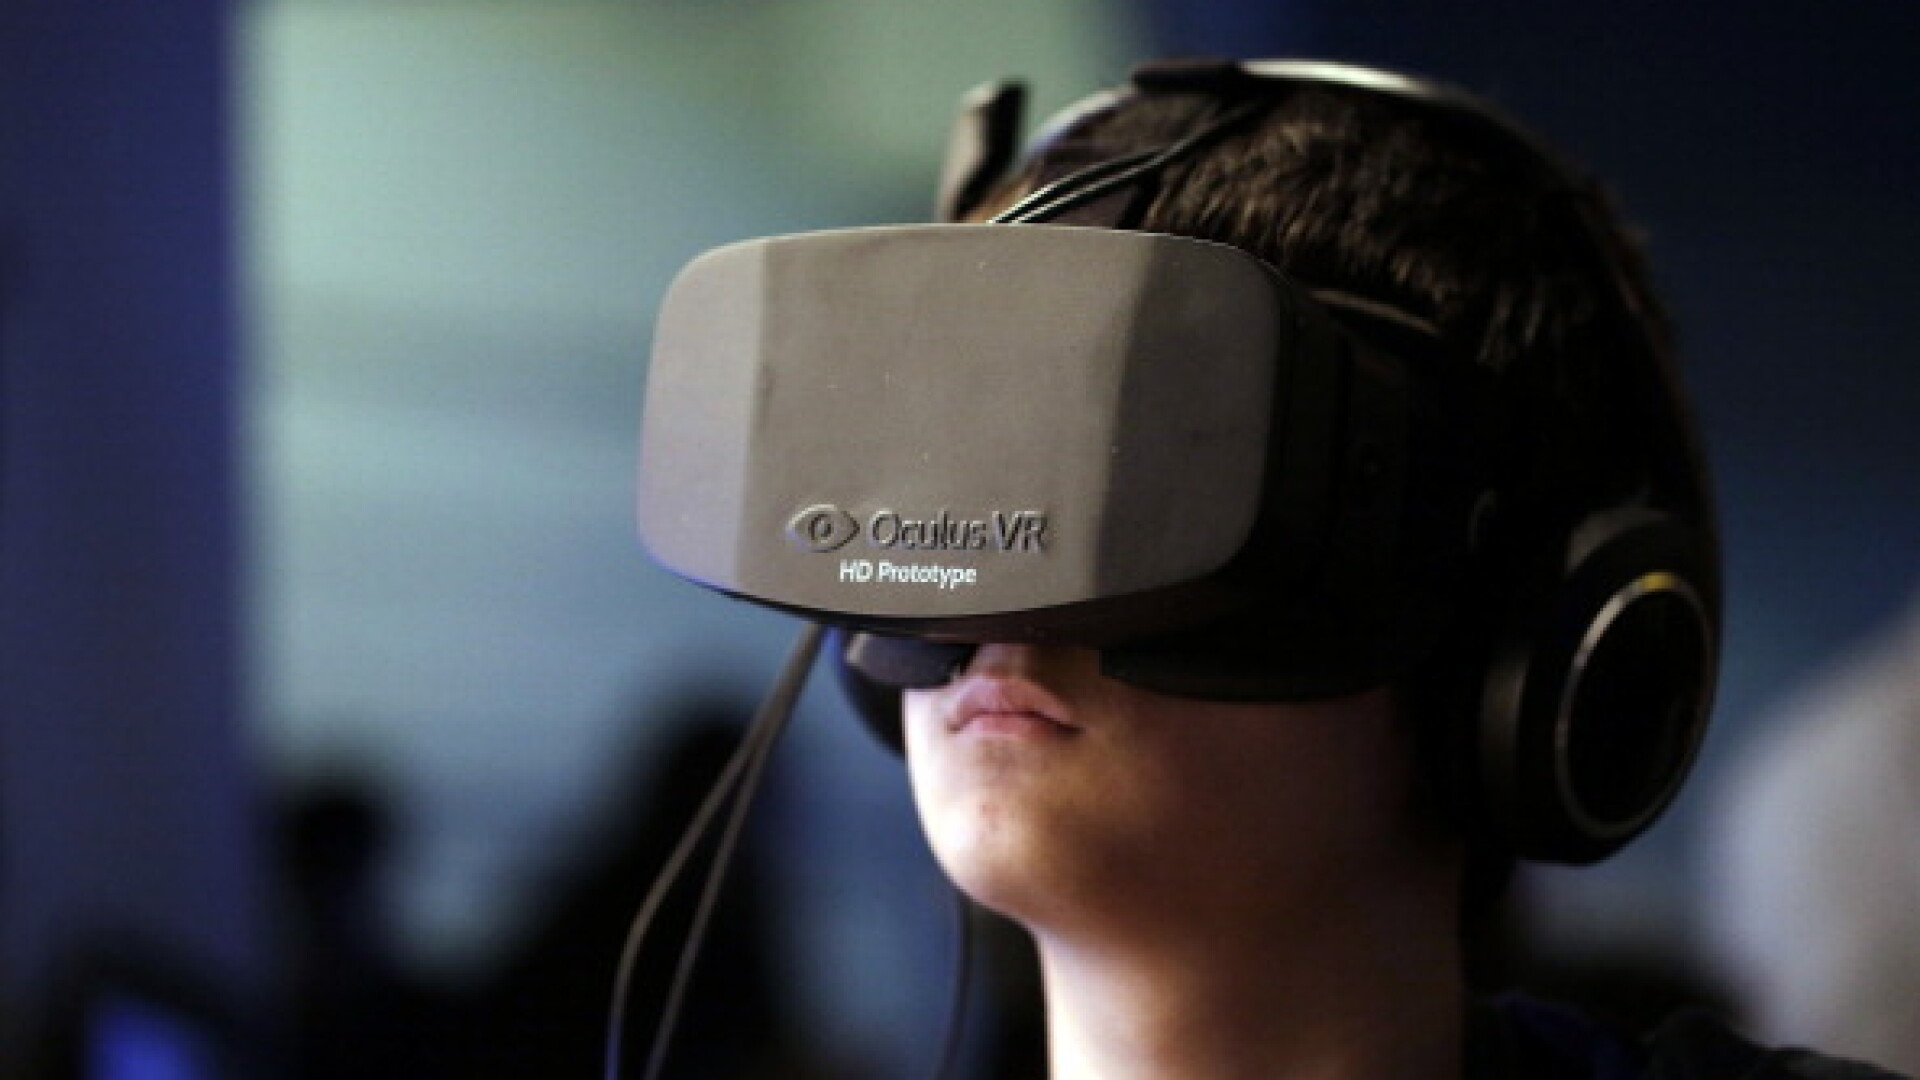 oculus VR